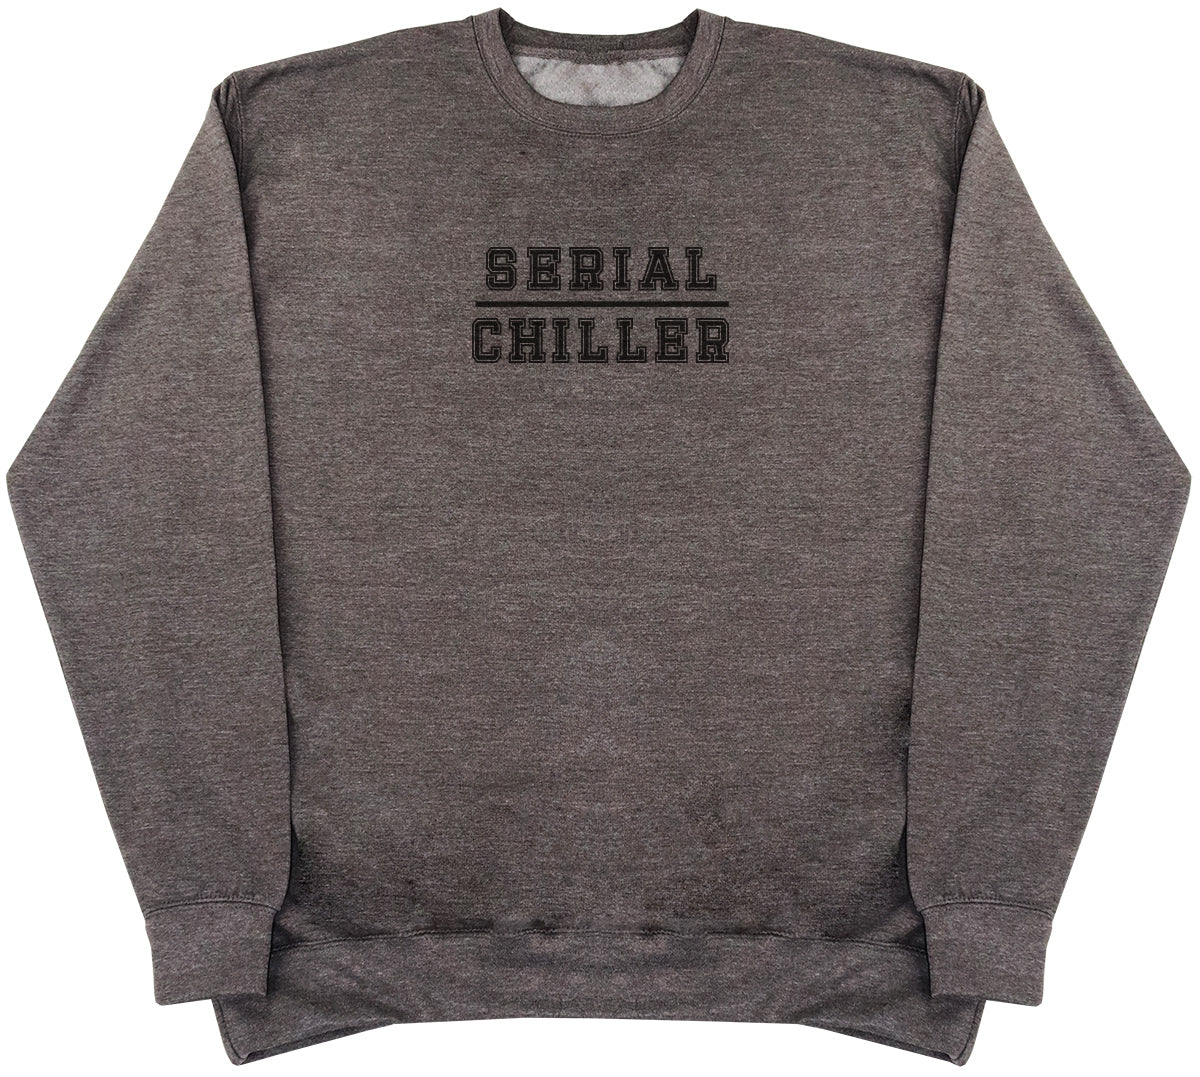 Serial Chiller - Huge Oversized Comfy Original Sweater